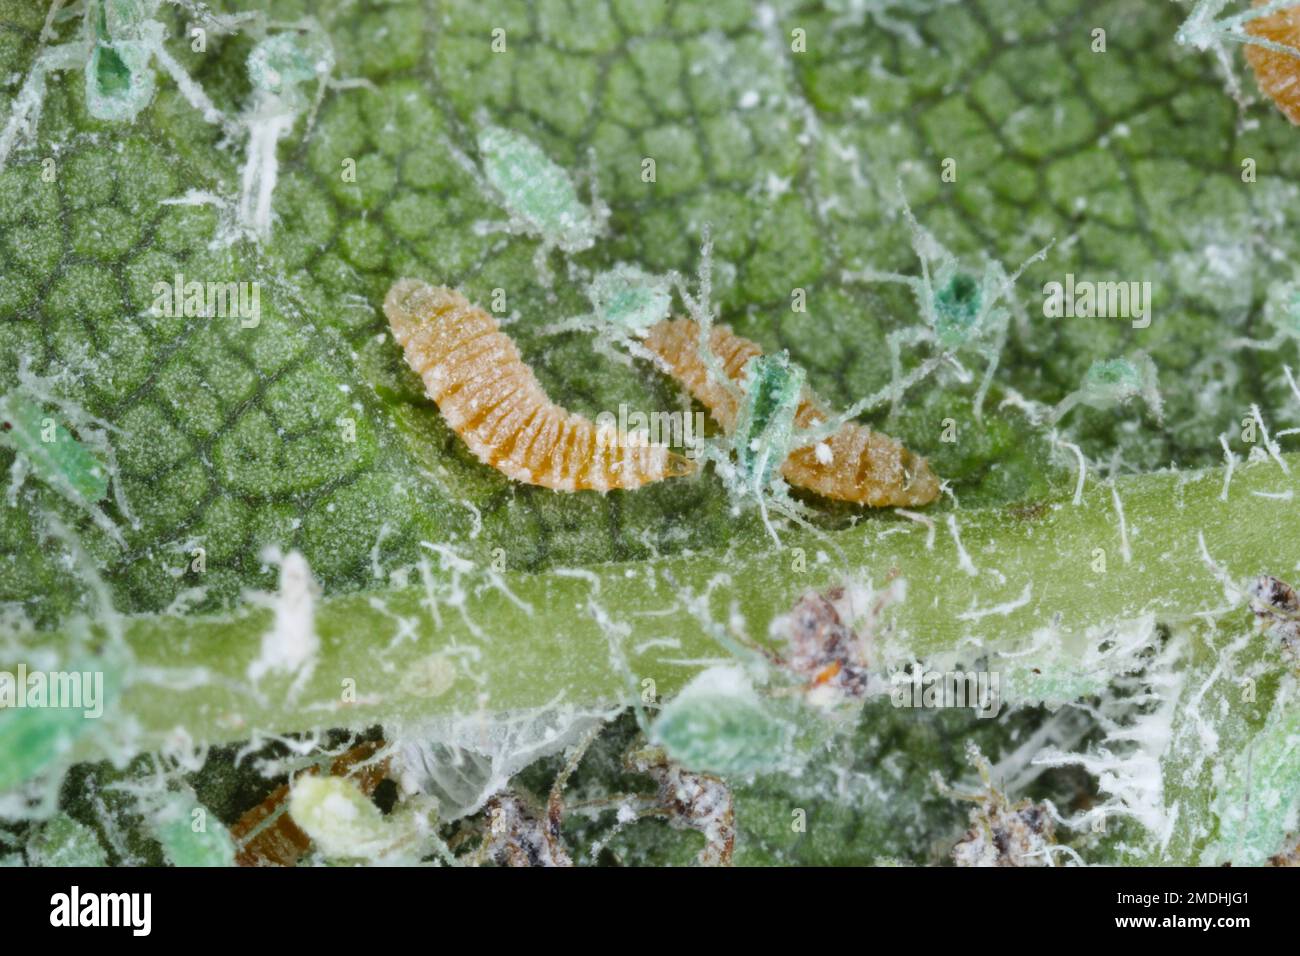 Larve d'un aphidoletes aphidimyza (communément appelé mige pucidique) se nourrissant du puceron méaly Plum (Hyalopterus pruni) Banque D'Images